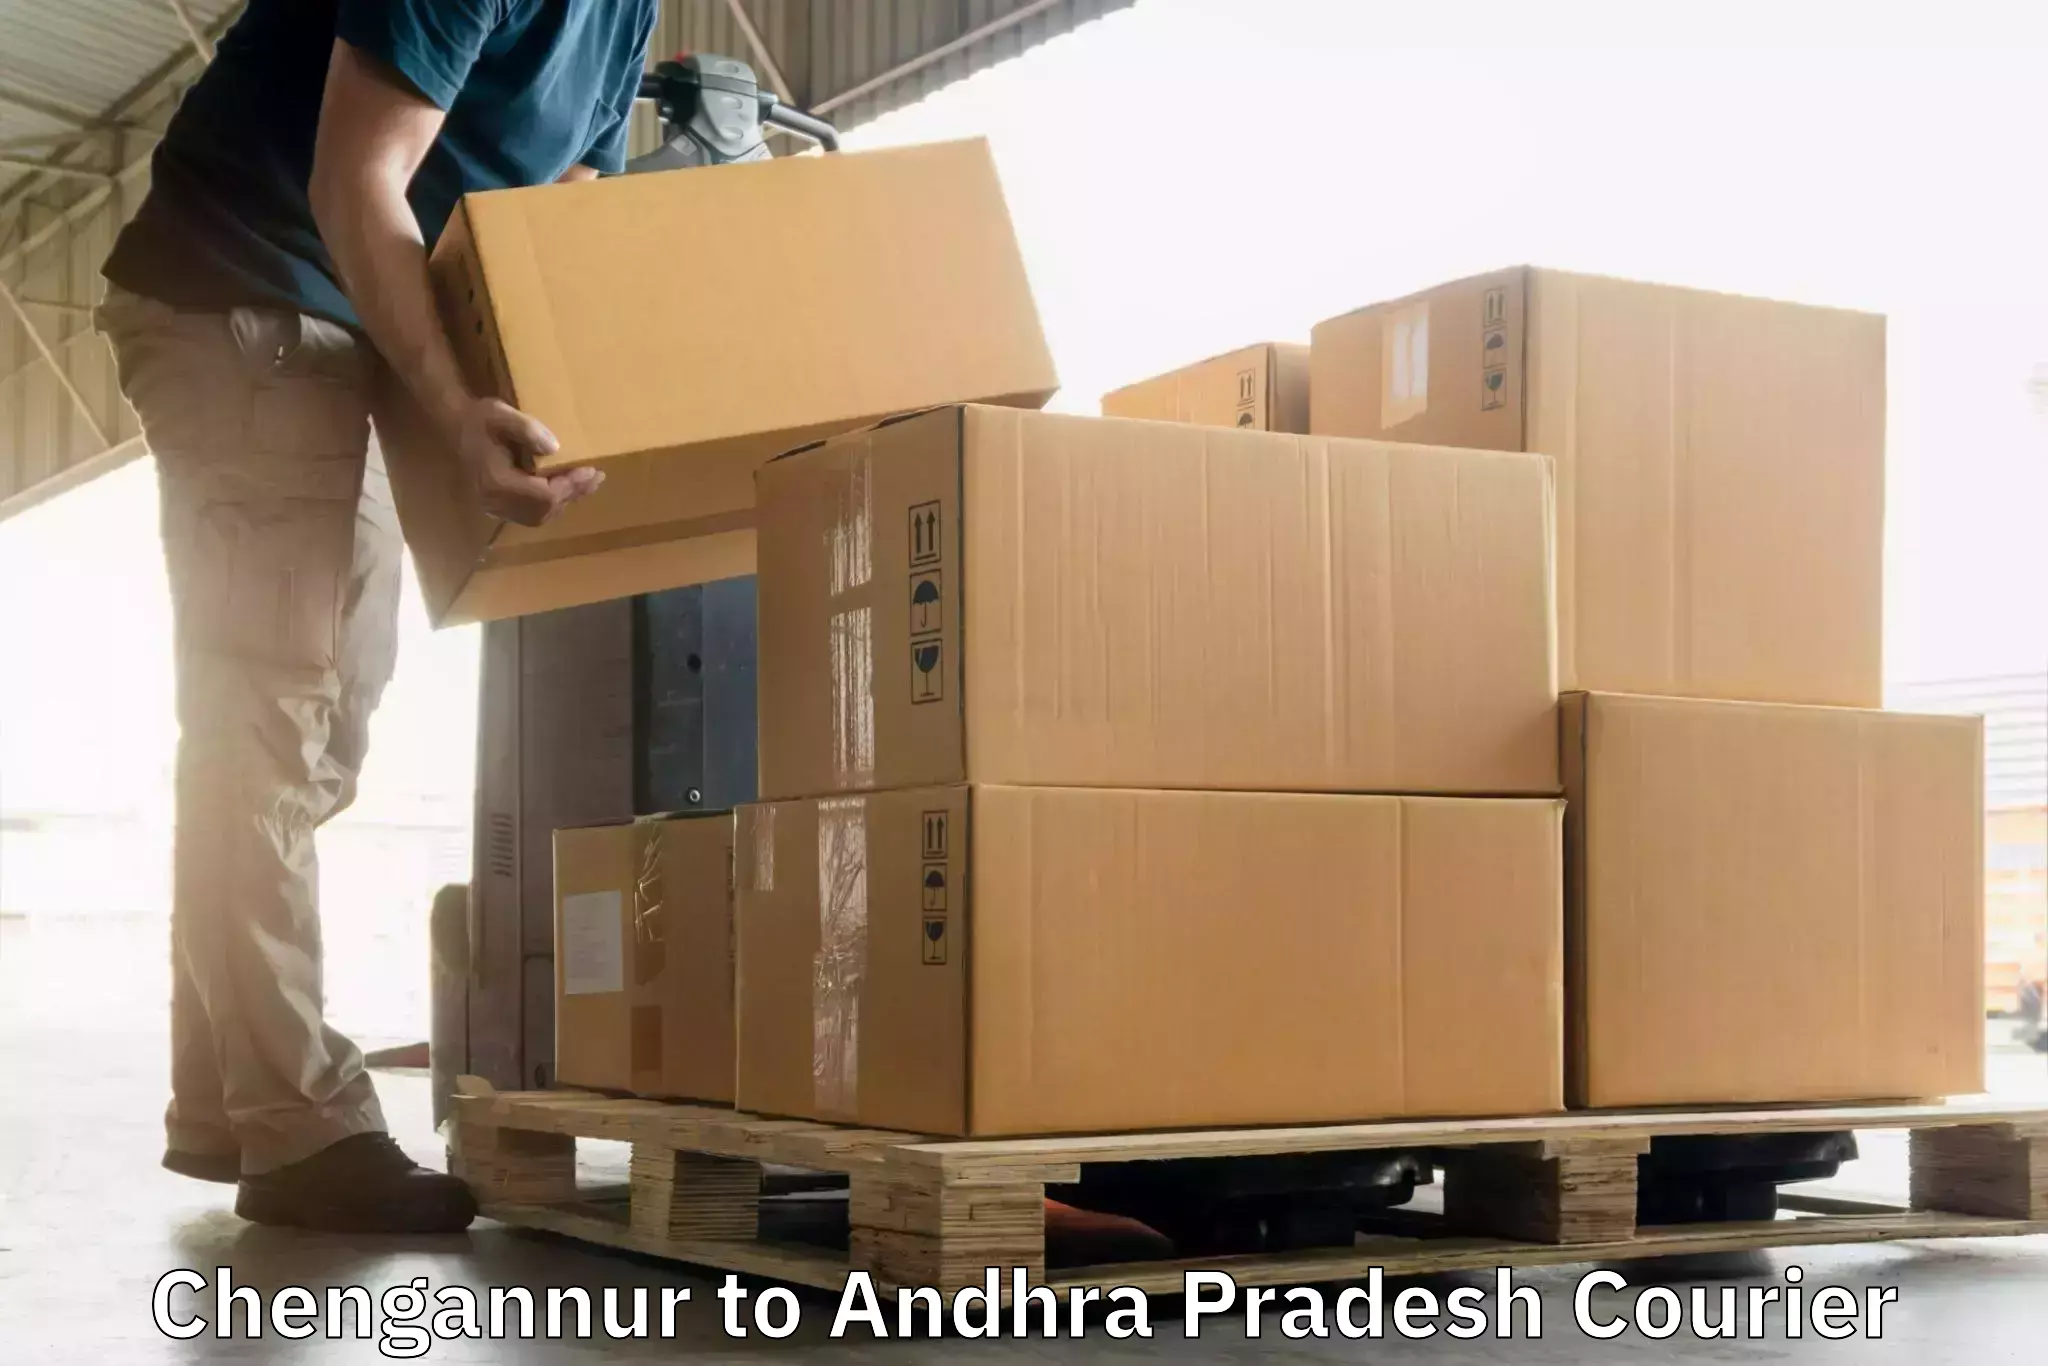 High-performance logistics Chengannur to Kurupam